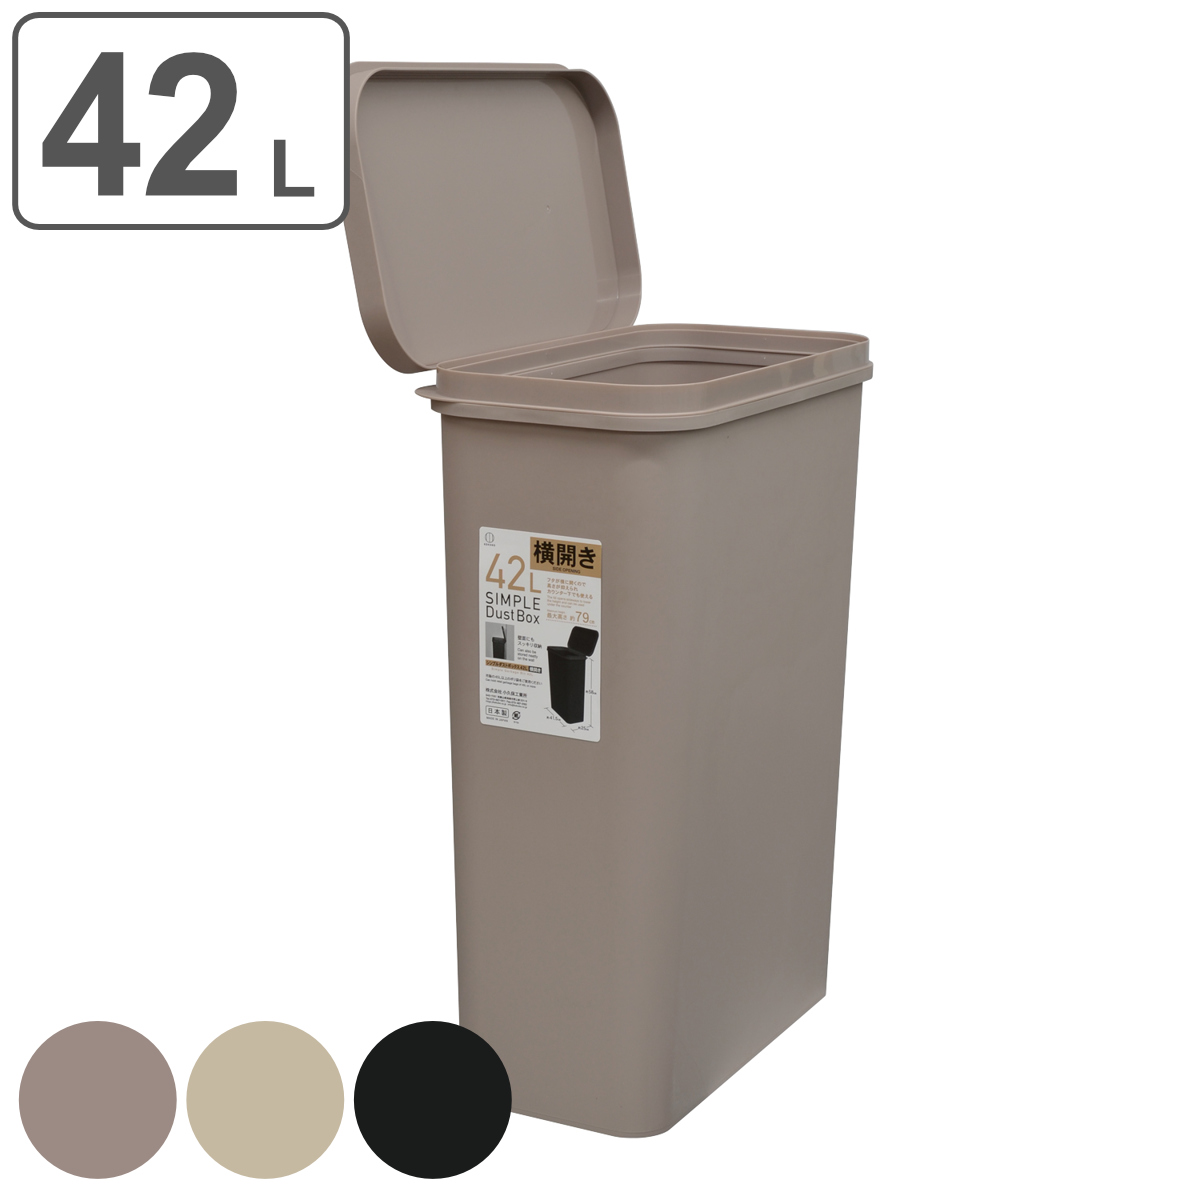 ゴミ箱 42L 横開き SIMPLE DUST BOX